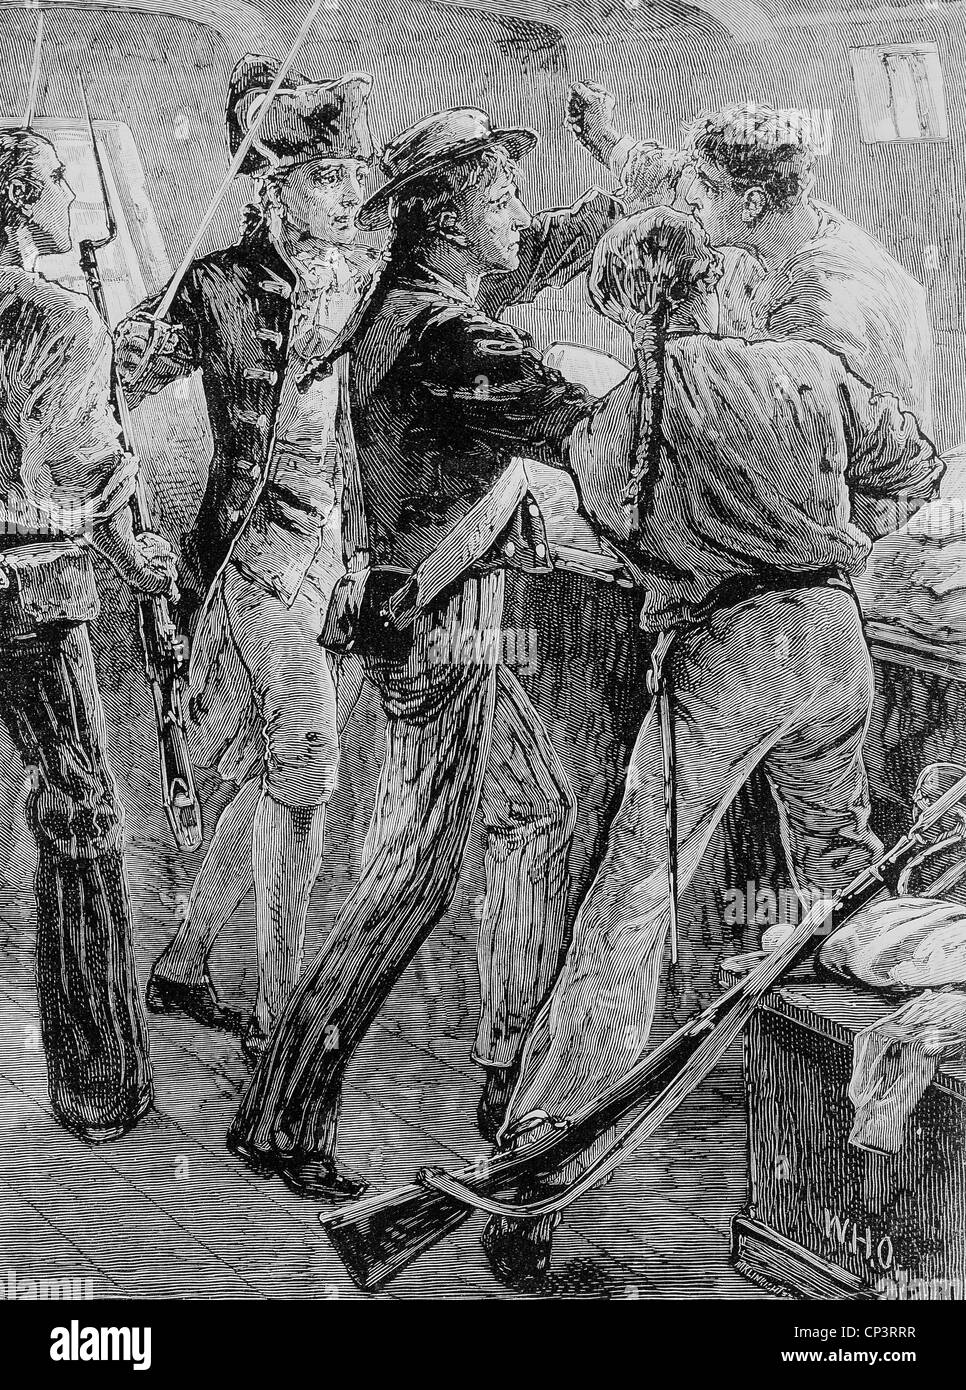 Bligh, William, 9.9.1754 - 7.12.1817, britischer Admiral, ausweis aus seinem Liegeplatz der Meuterer der HMS "Bounty", 28.4.1789, Holzgravur, 19. Jahrhundert, Stockfoto